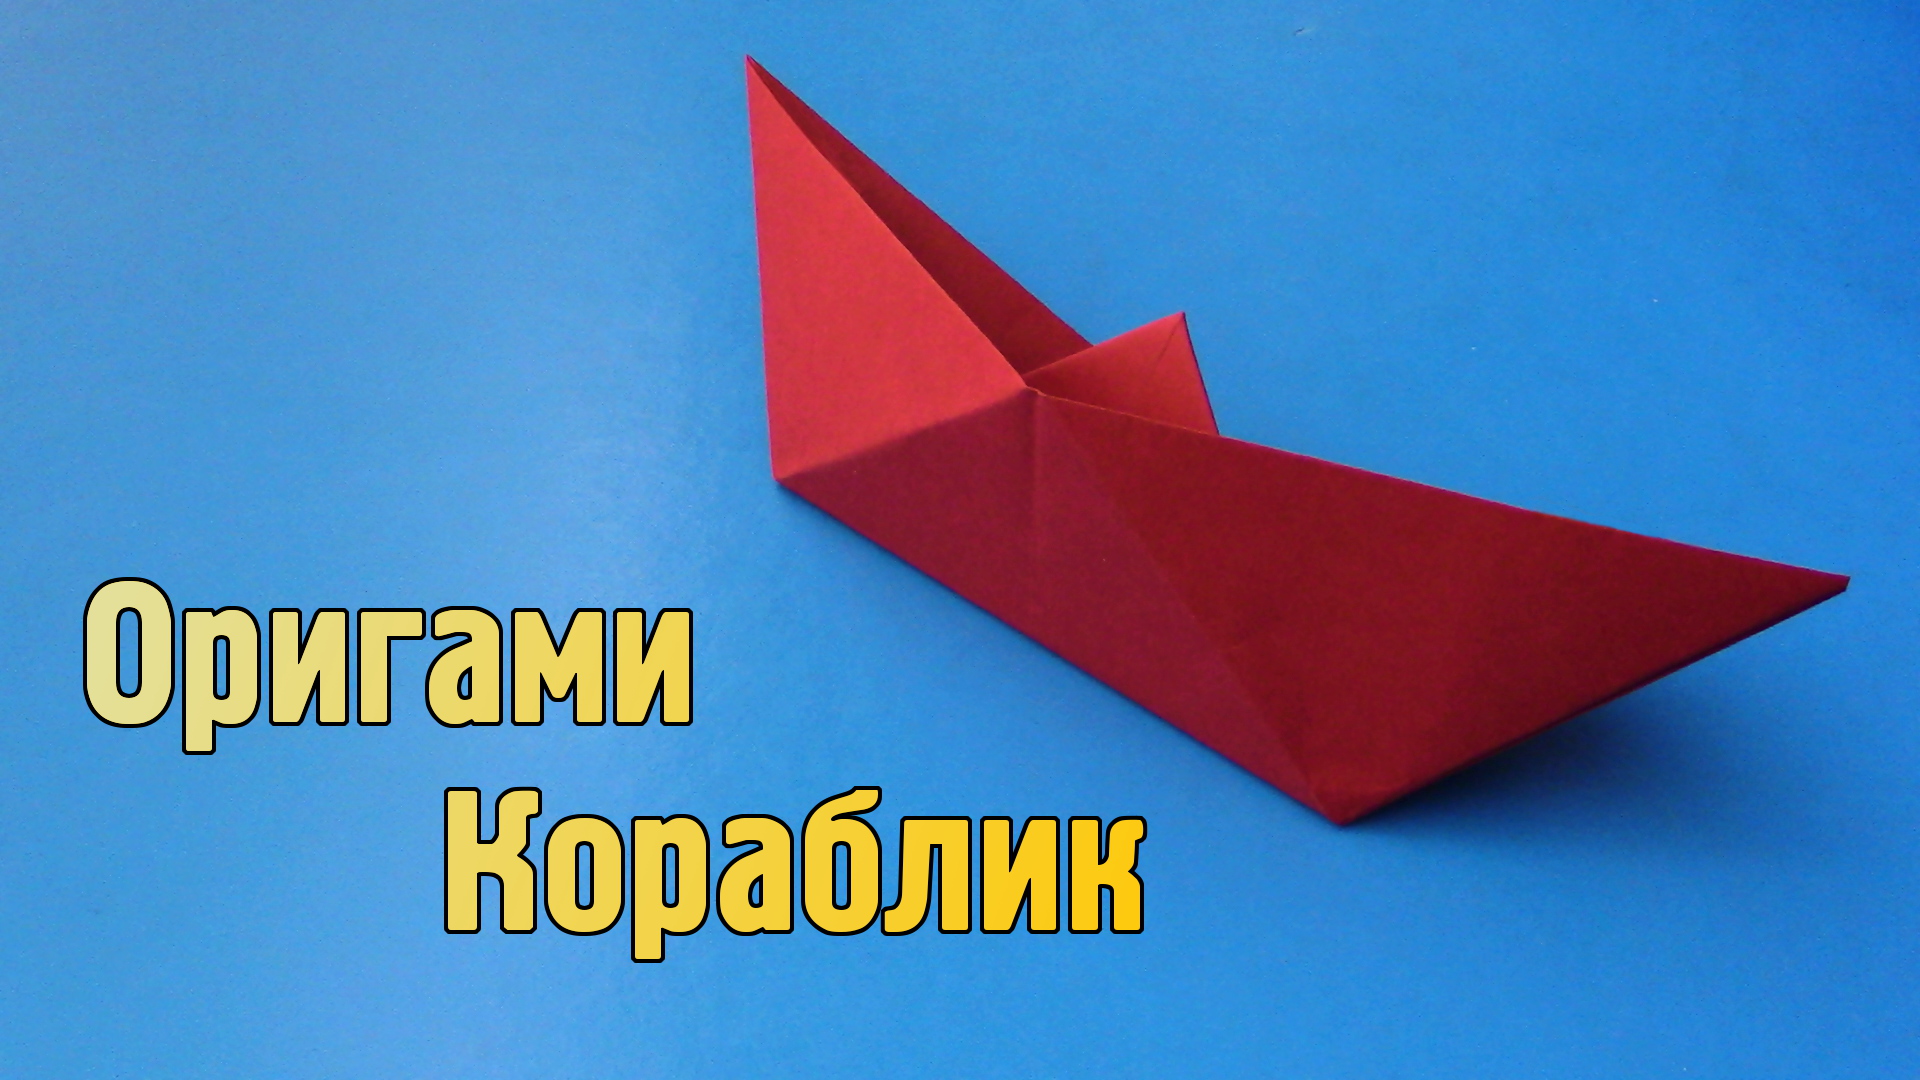 Как сделать кораблик из бумаги своими руками. Легкое оригами 